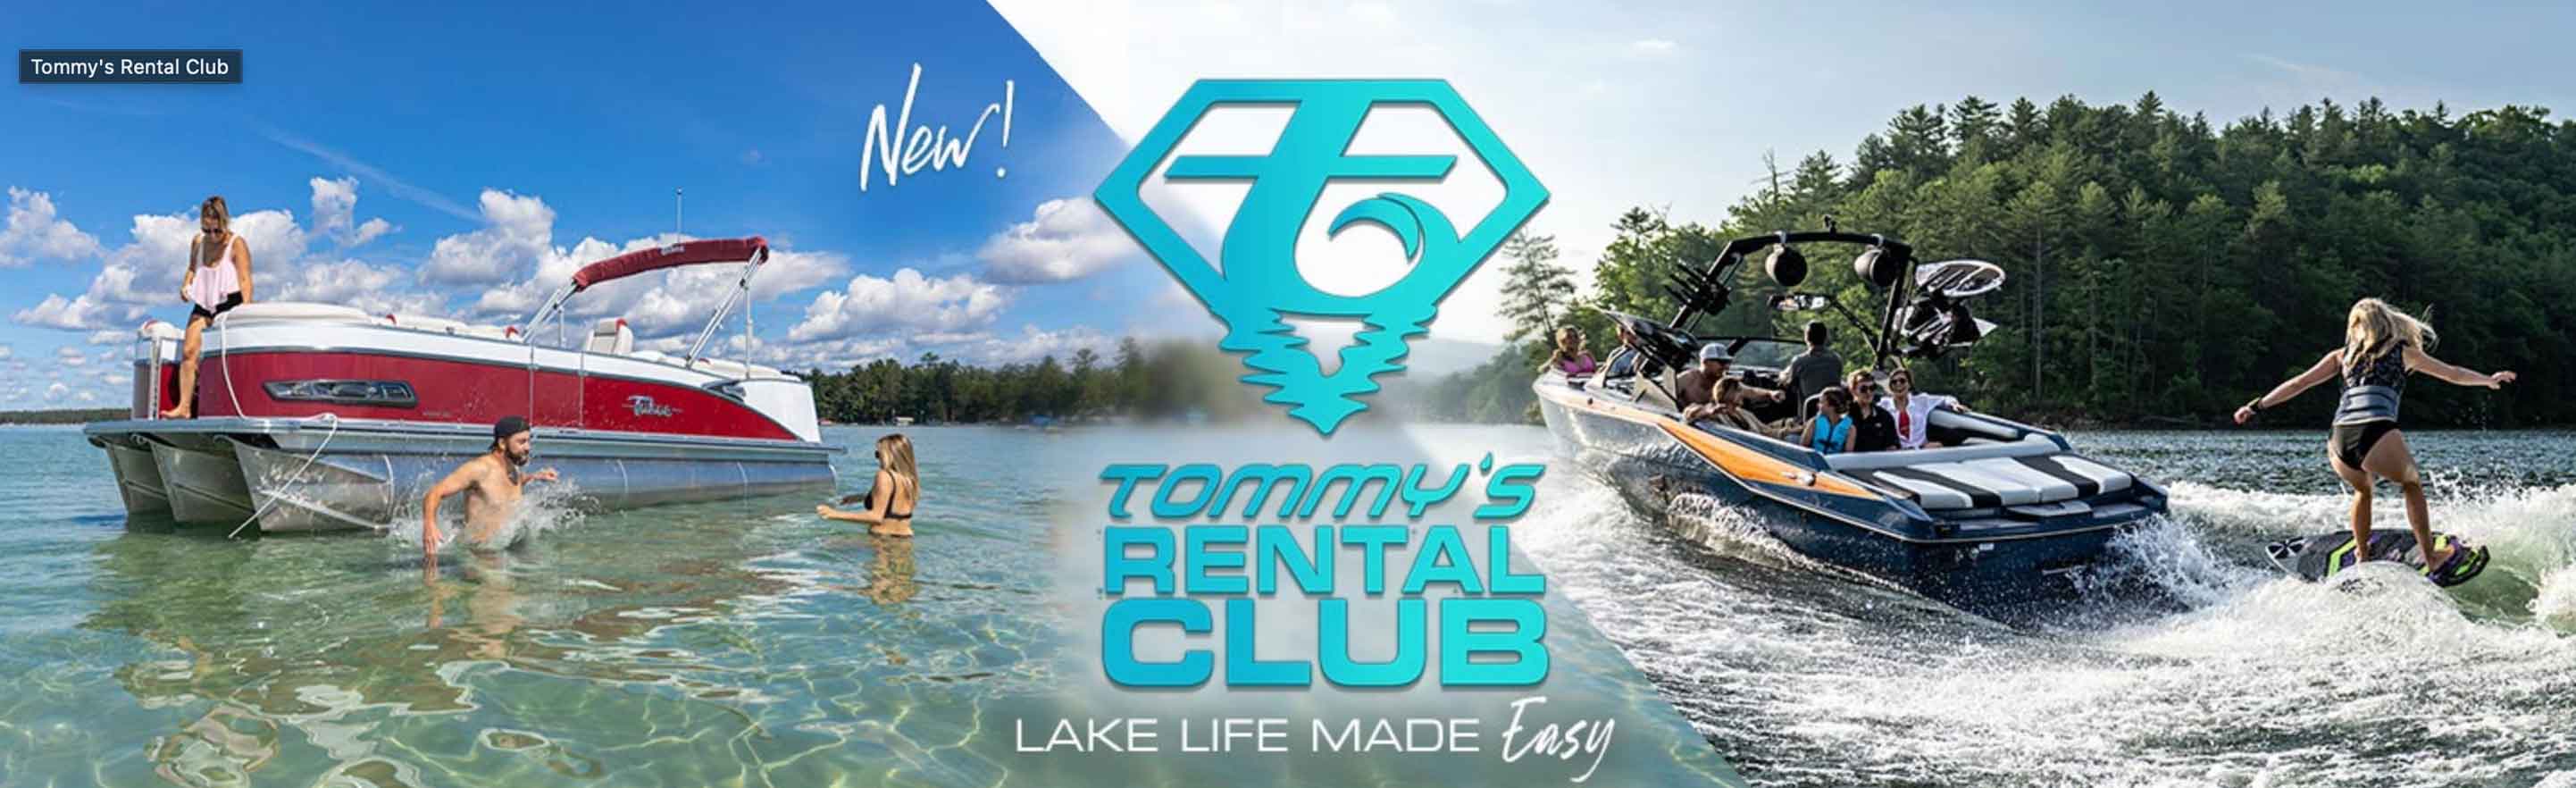 Tommy's Boat Rental Club at Possum Kingdom Lake, Texas #1